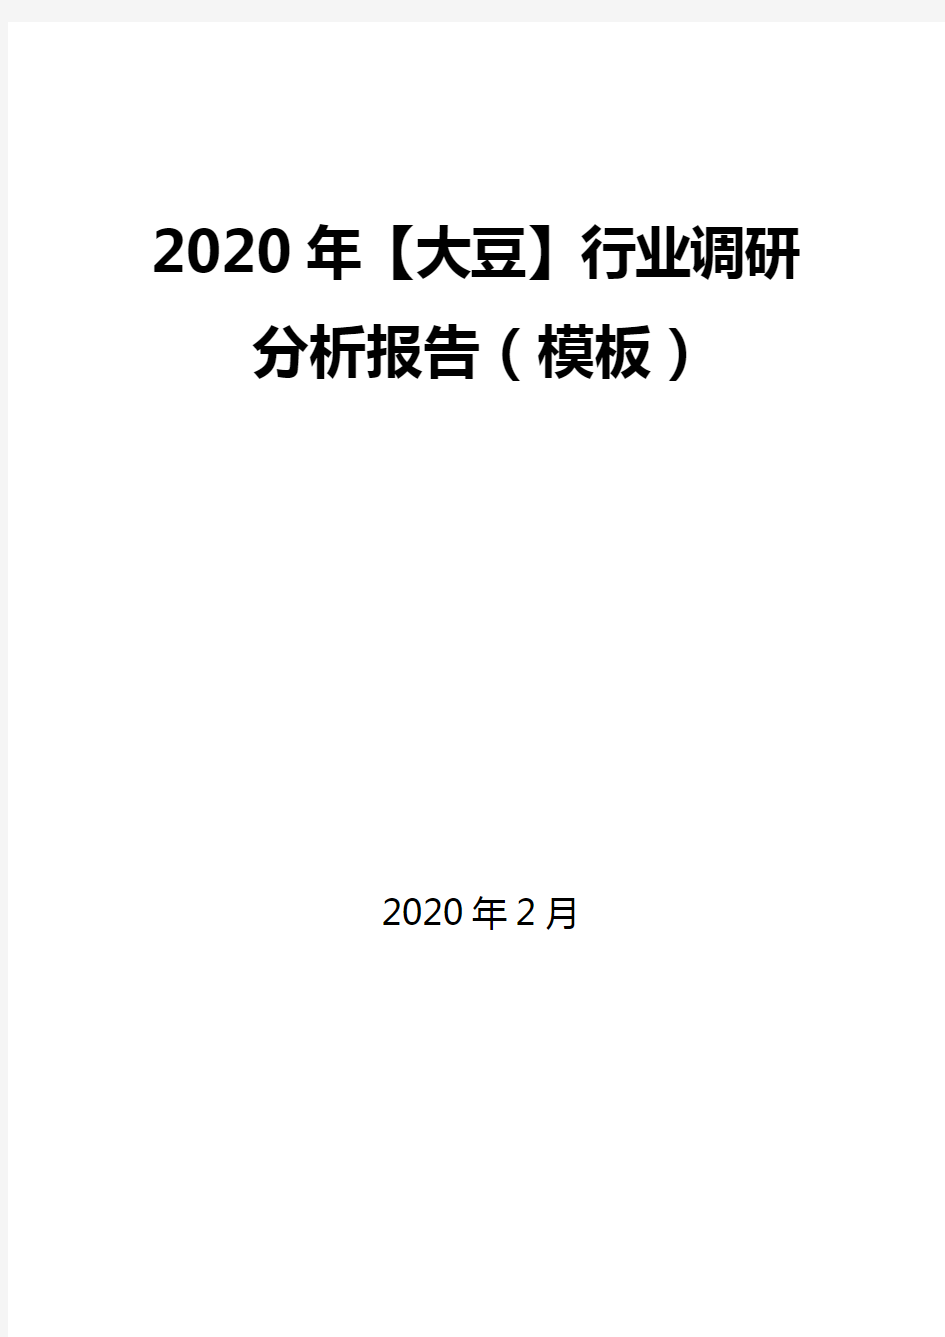 2020年【大豆】行业调研分析报告(模板)